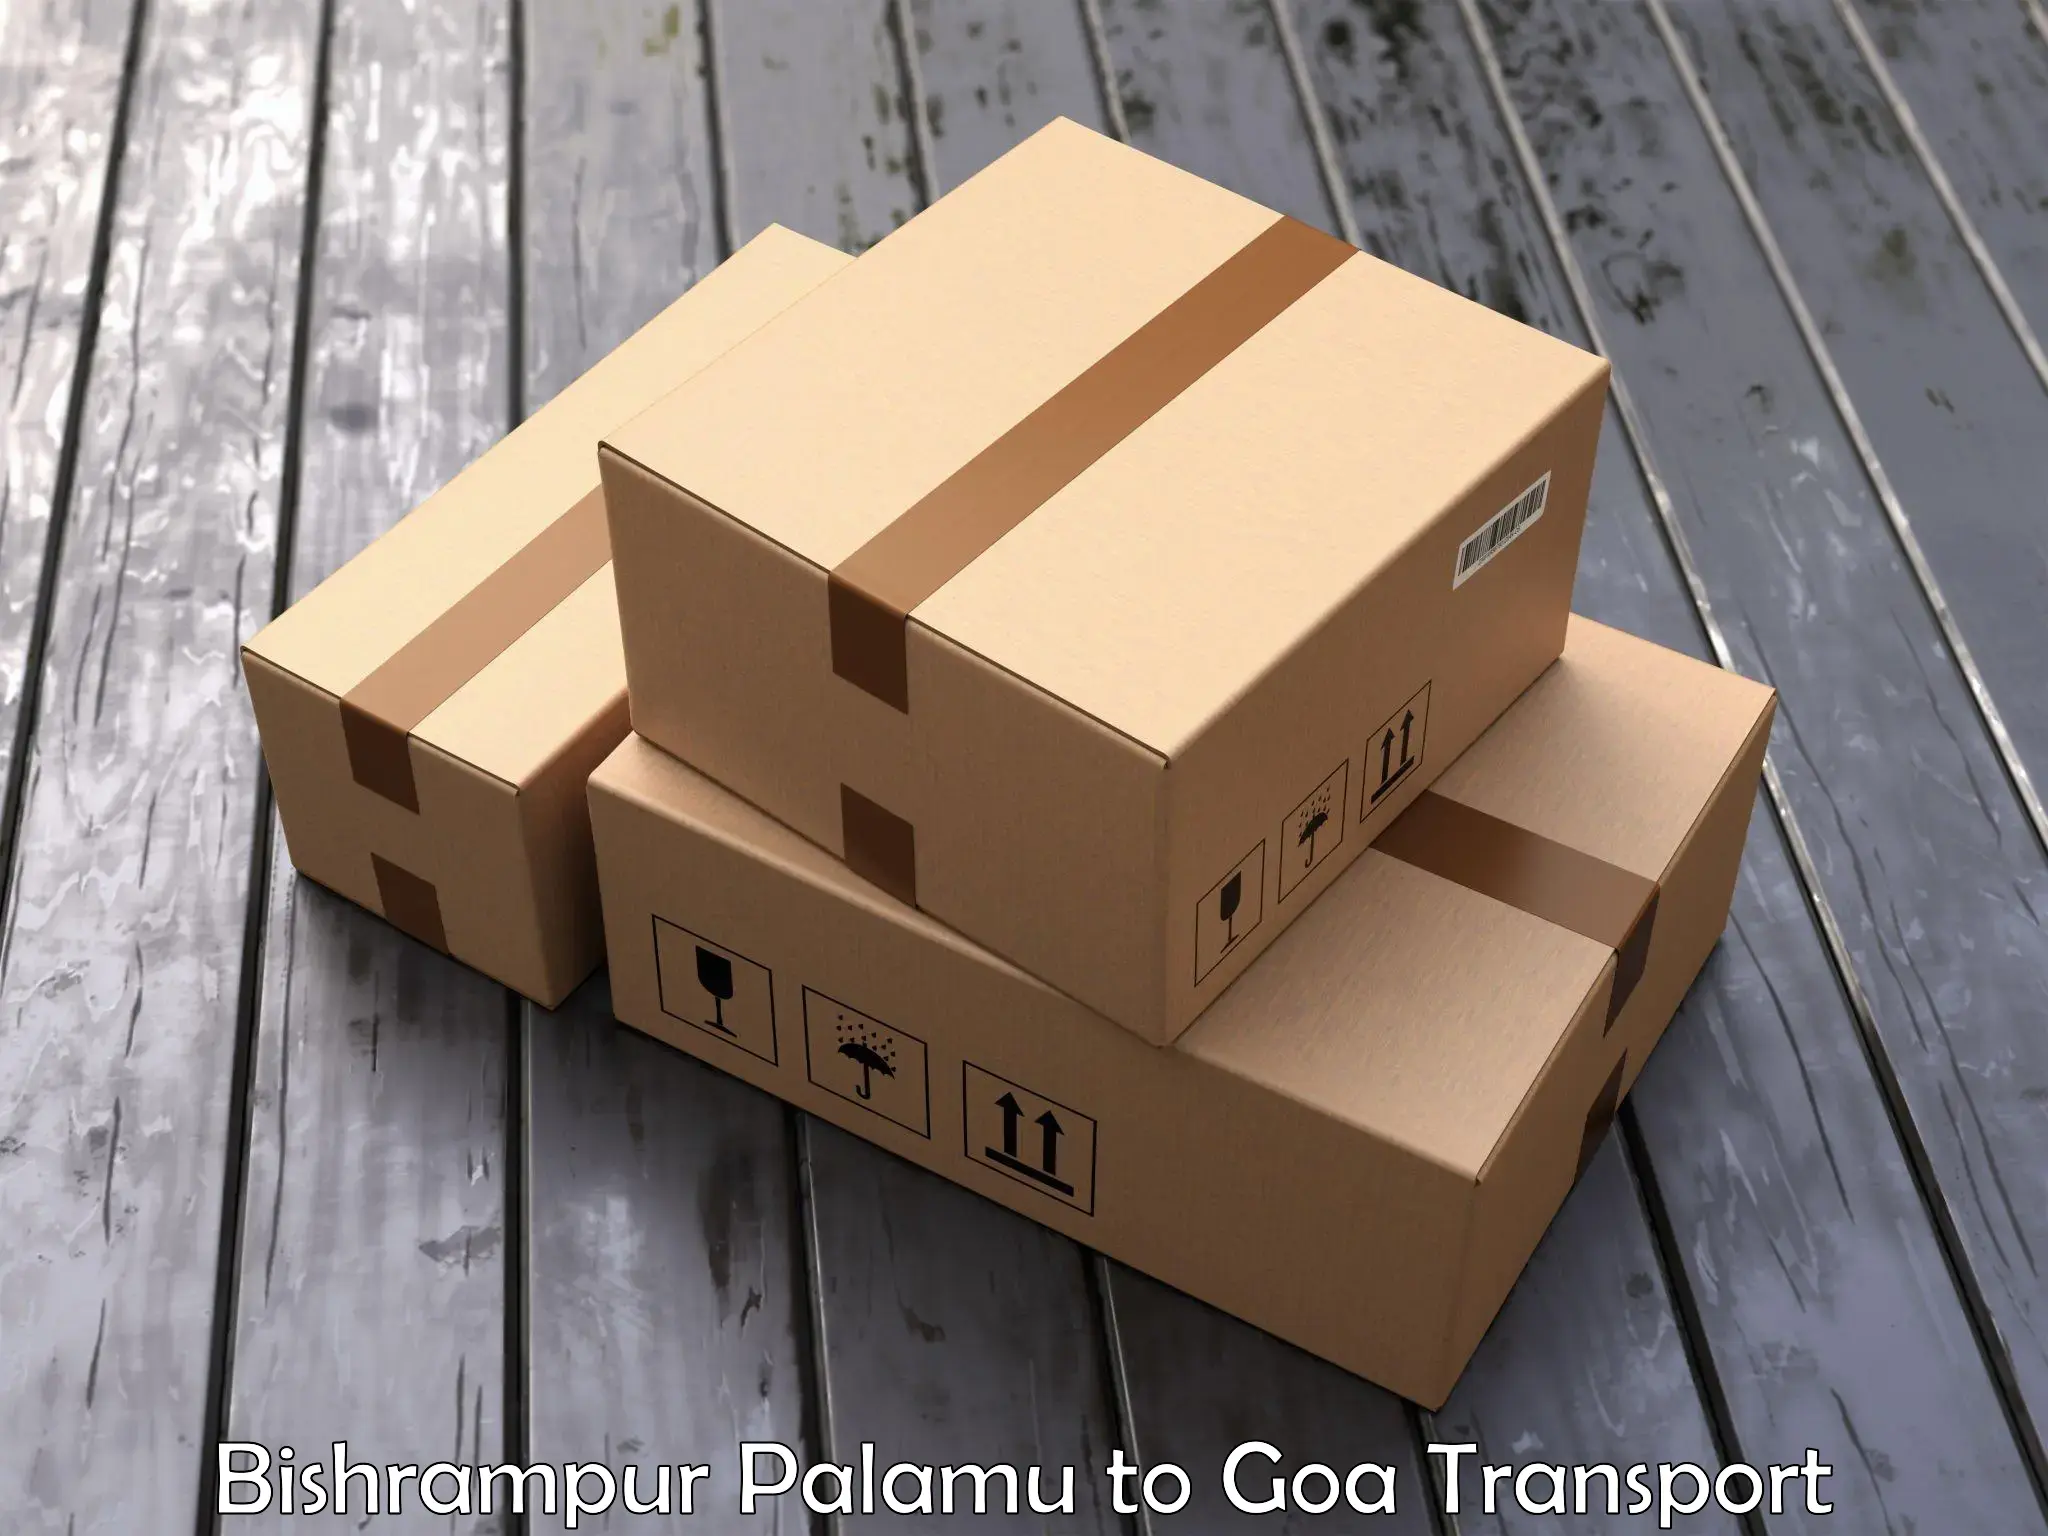 Express transport services Bishrampur Palamu to Goa University